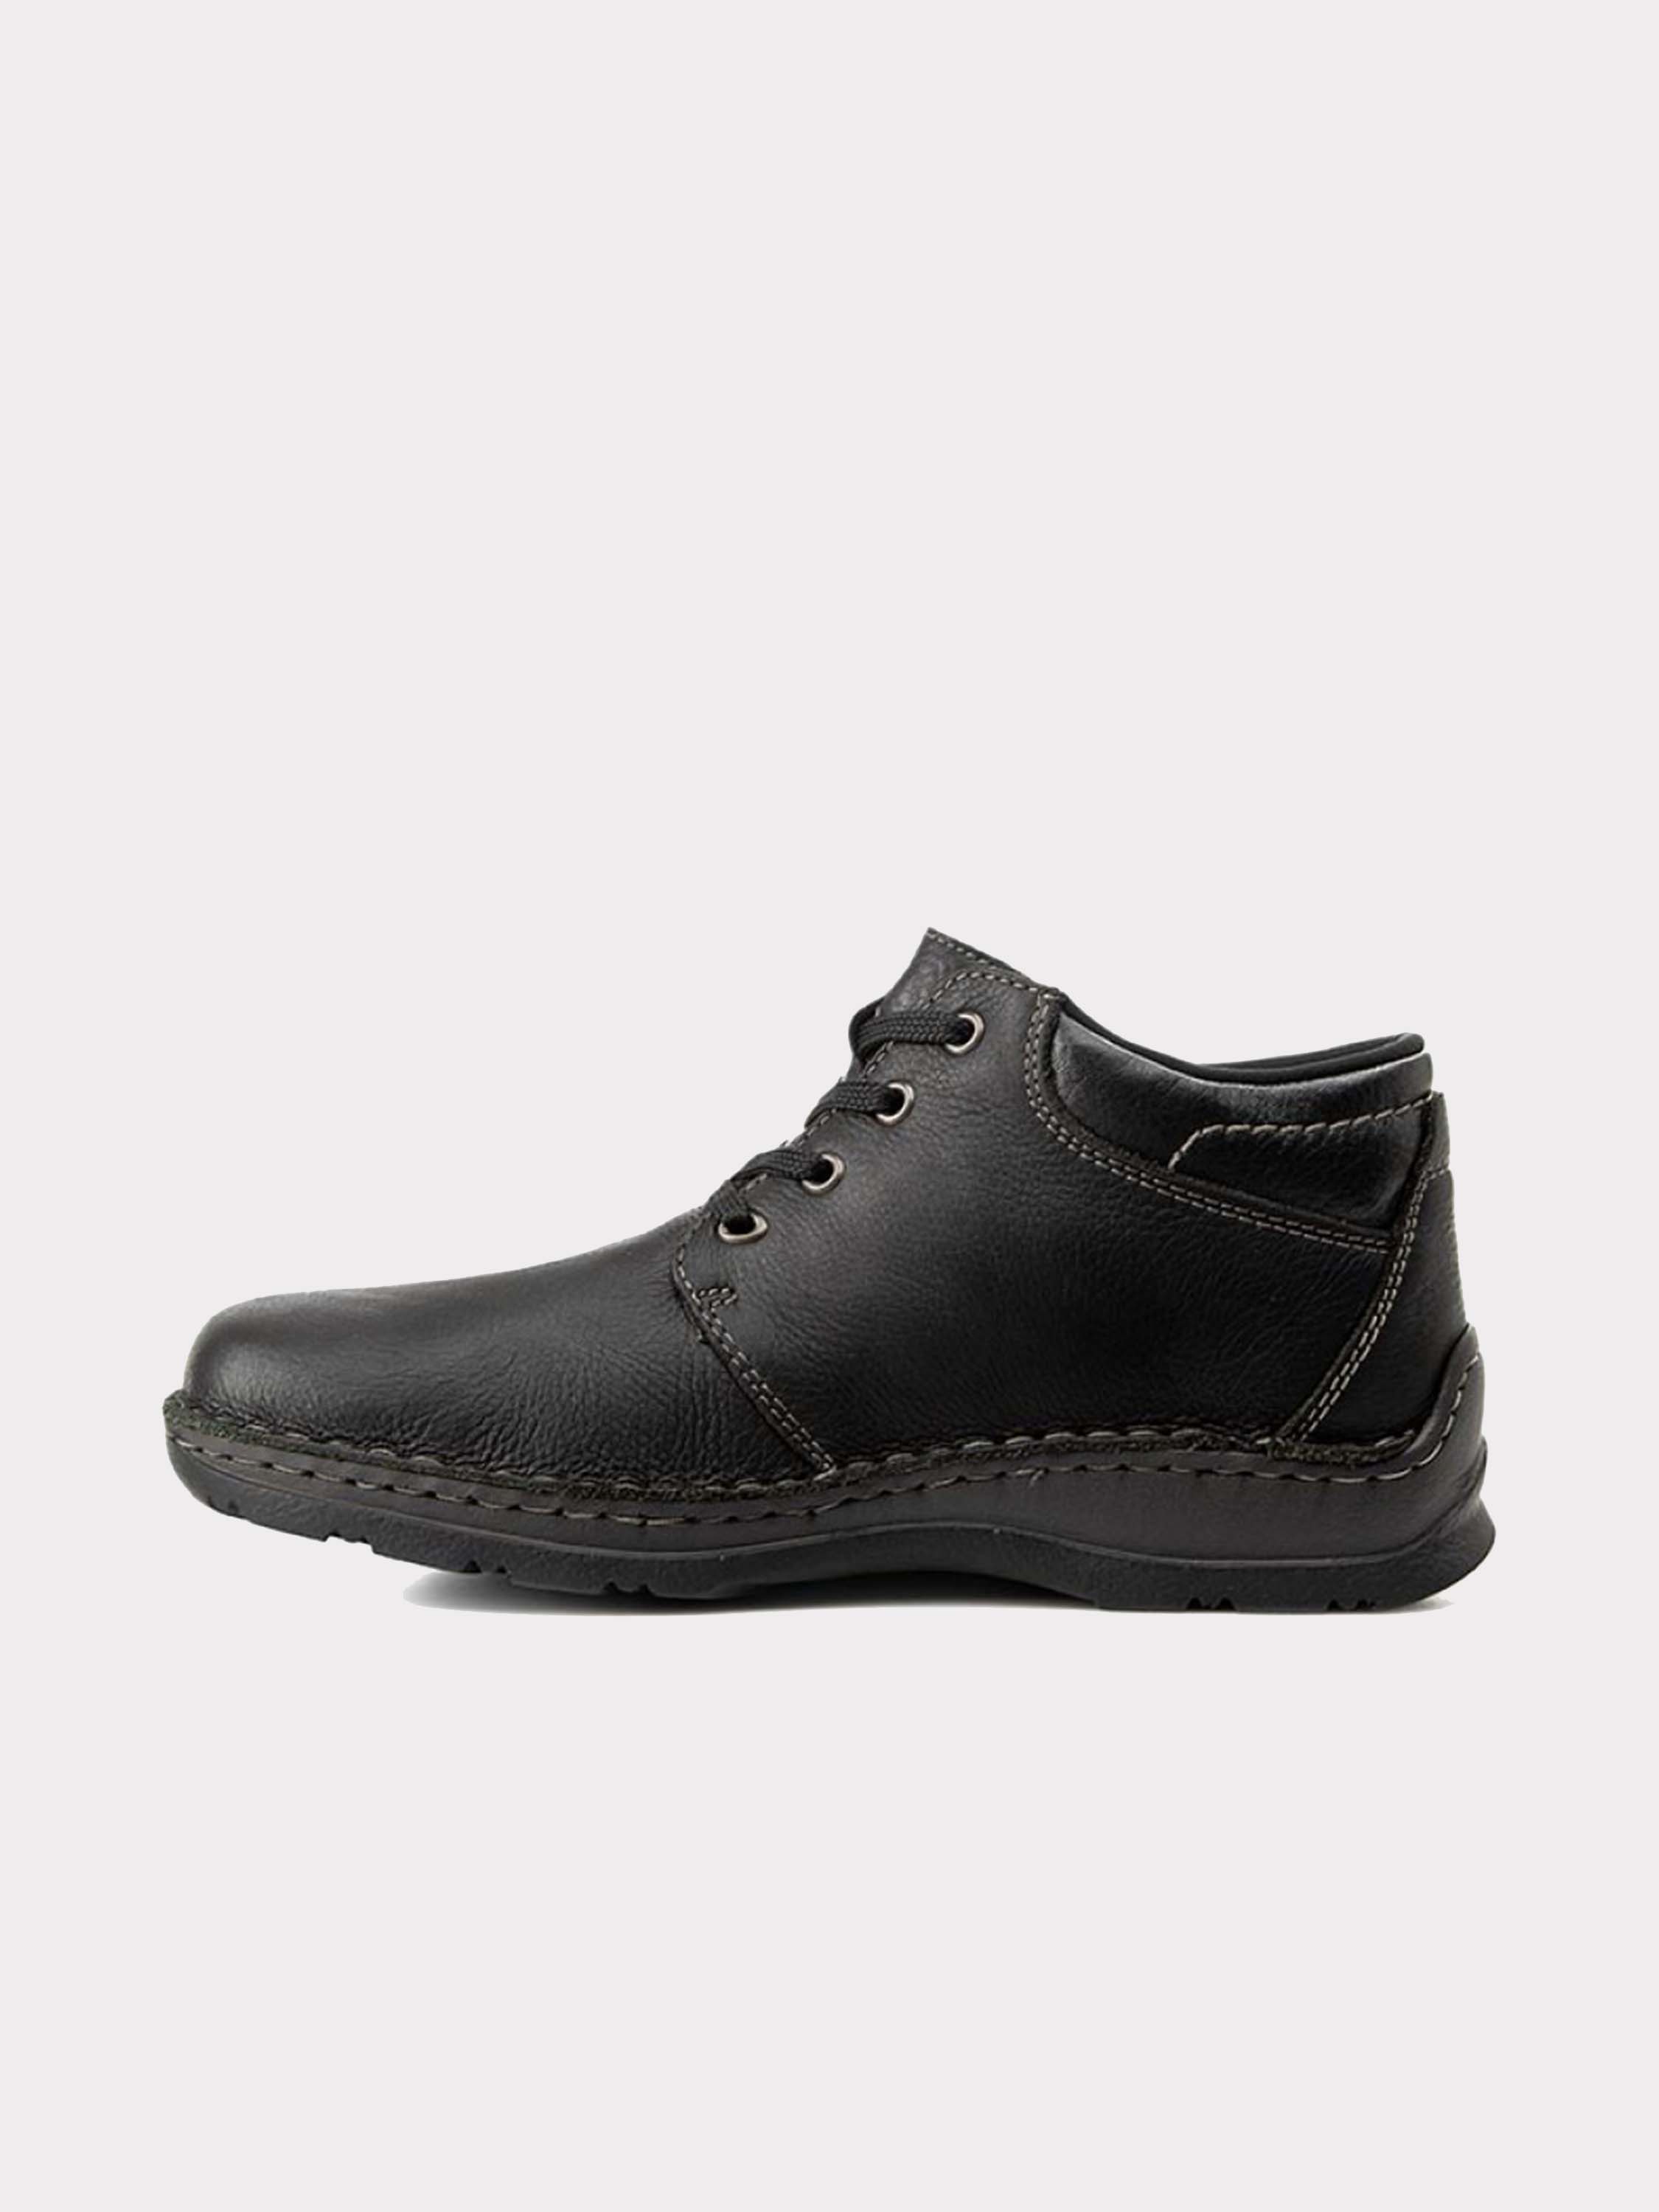 Rieker 05305 Men's Full Grain Leather Ankle Boots #color_Black